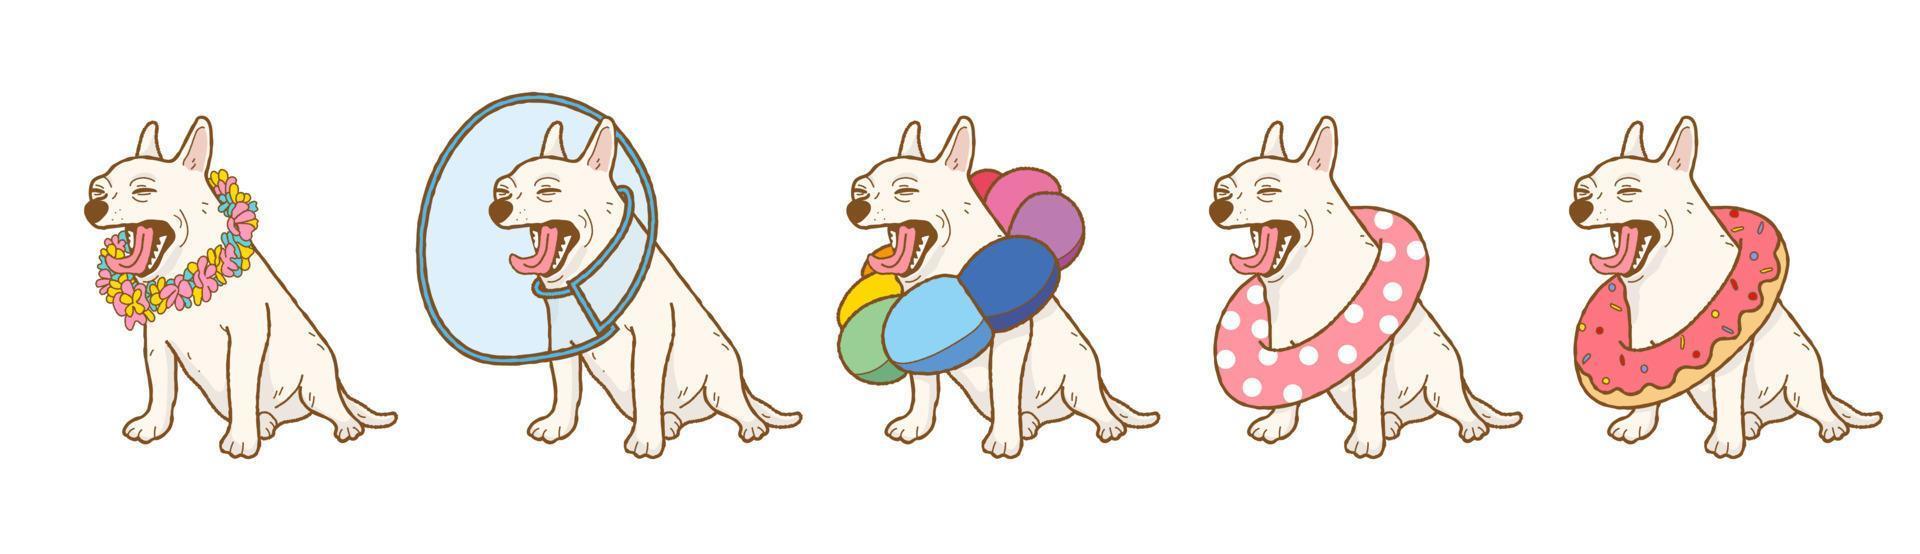 Cartoon-Chihuahua-Hund mit Donuts, Schwimmringen, Kränzen, Haustierkegel, elizabethanischem Kragen und Blumenreifen vektor